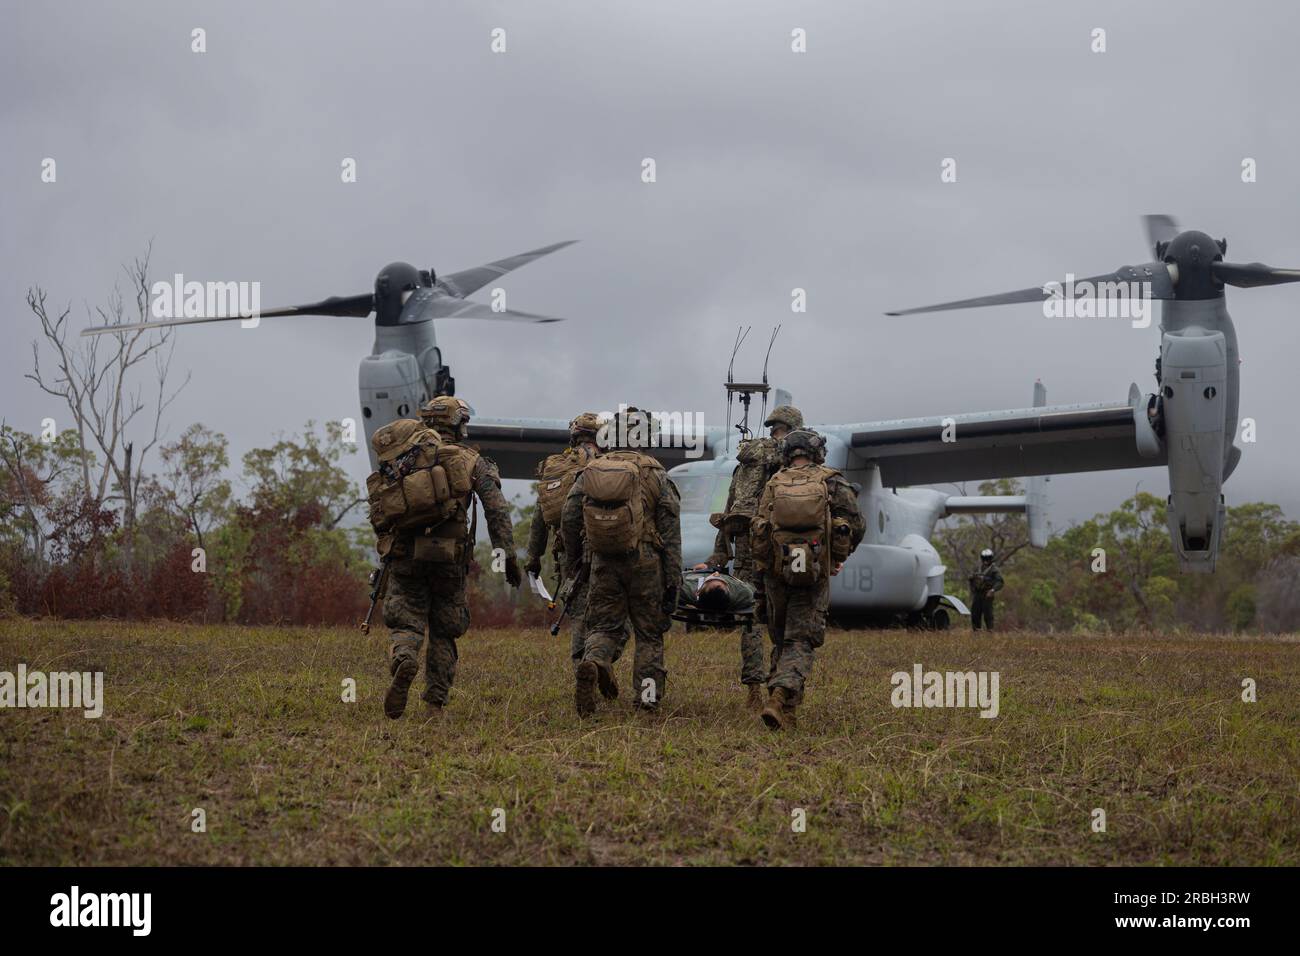 ÉTATS-UNIS Les Marines avec l'équipe de débarquement du bataillon 2/1, 31st Marine Expeditionary Unit, extraient une personne simulée d'intérêt pour la sécurité lors d'un exercice de récupération tactique d'avions et de personnel dans la zone d'entraînement militaire de Shoalwater Bay, Australie, le 4 juillet 2023. L’exercice TRAP a été mené pour évaluer les tactiques de réponse rapide et de récupération du peloton du personnel et de l’équipement des aéronefs abattus, ainsi que les capacités avancées de maintien de la vie en cas de traumatisme dans des endroits isolés pendant le déploiement. Le 31st MEU opère à bord des navires du America Amphibious Ready Group dans la zone d'opérations de la 7th Fleet Banque D'Images